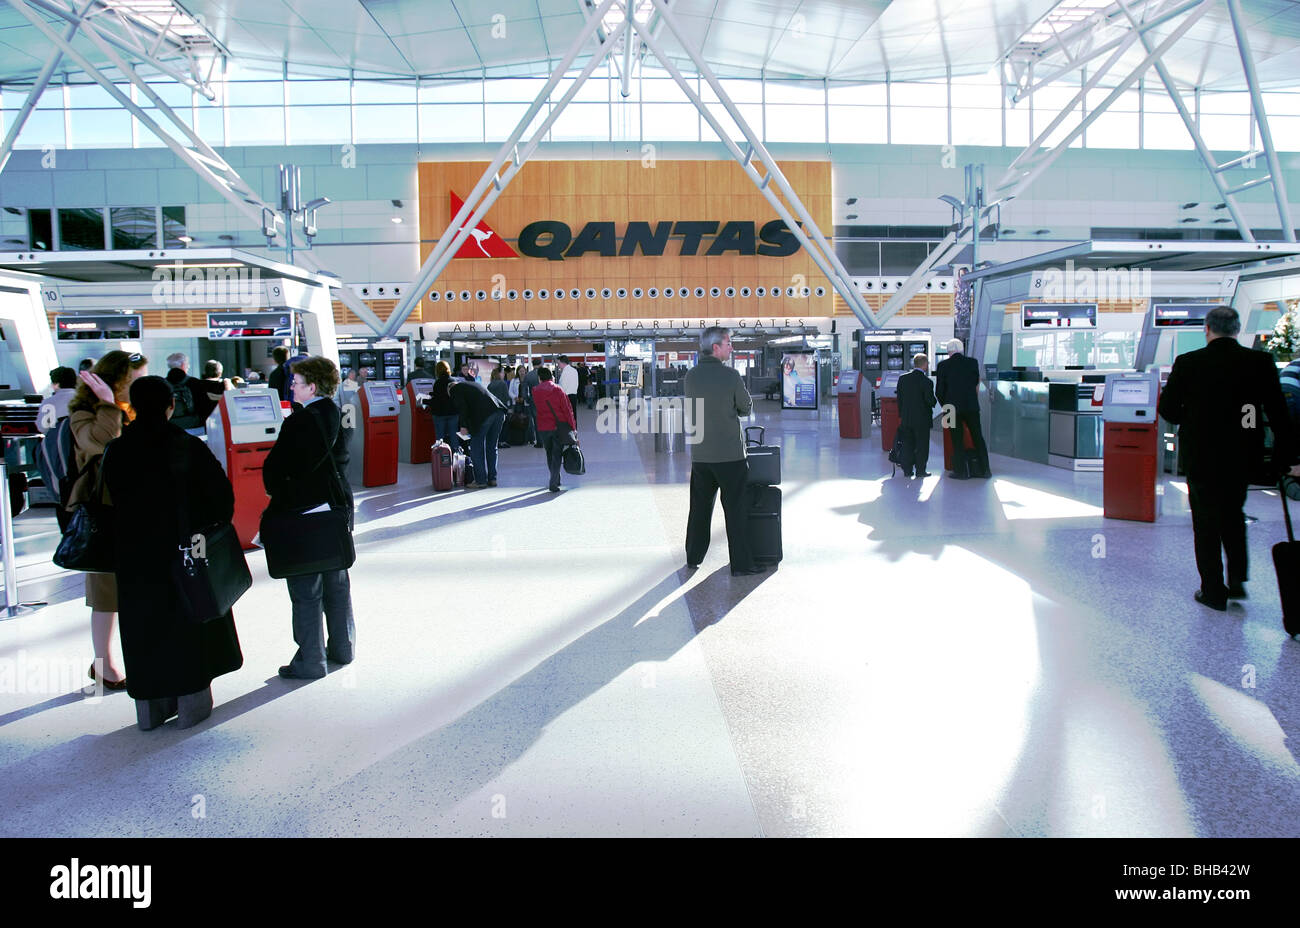 Qantas Airport terminal, Sydney Australia Stock Photo